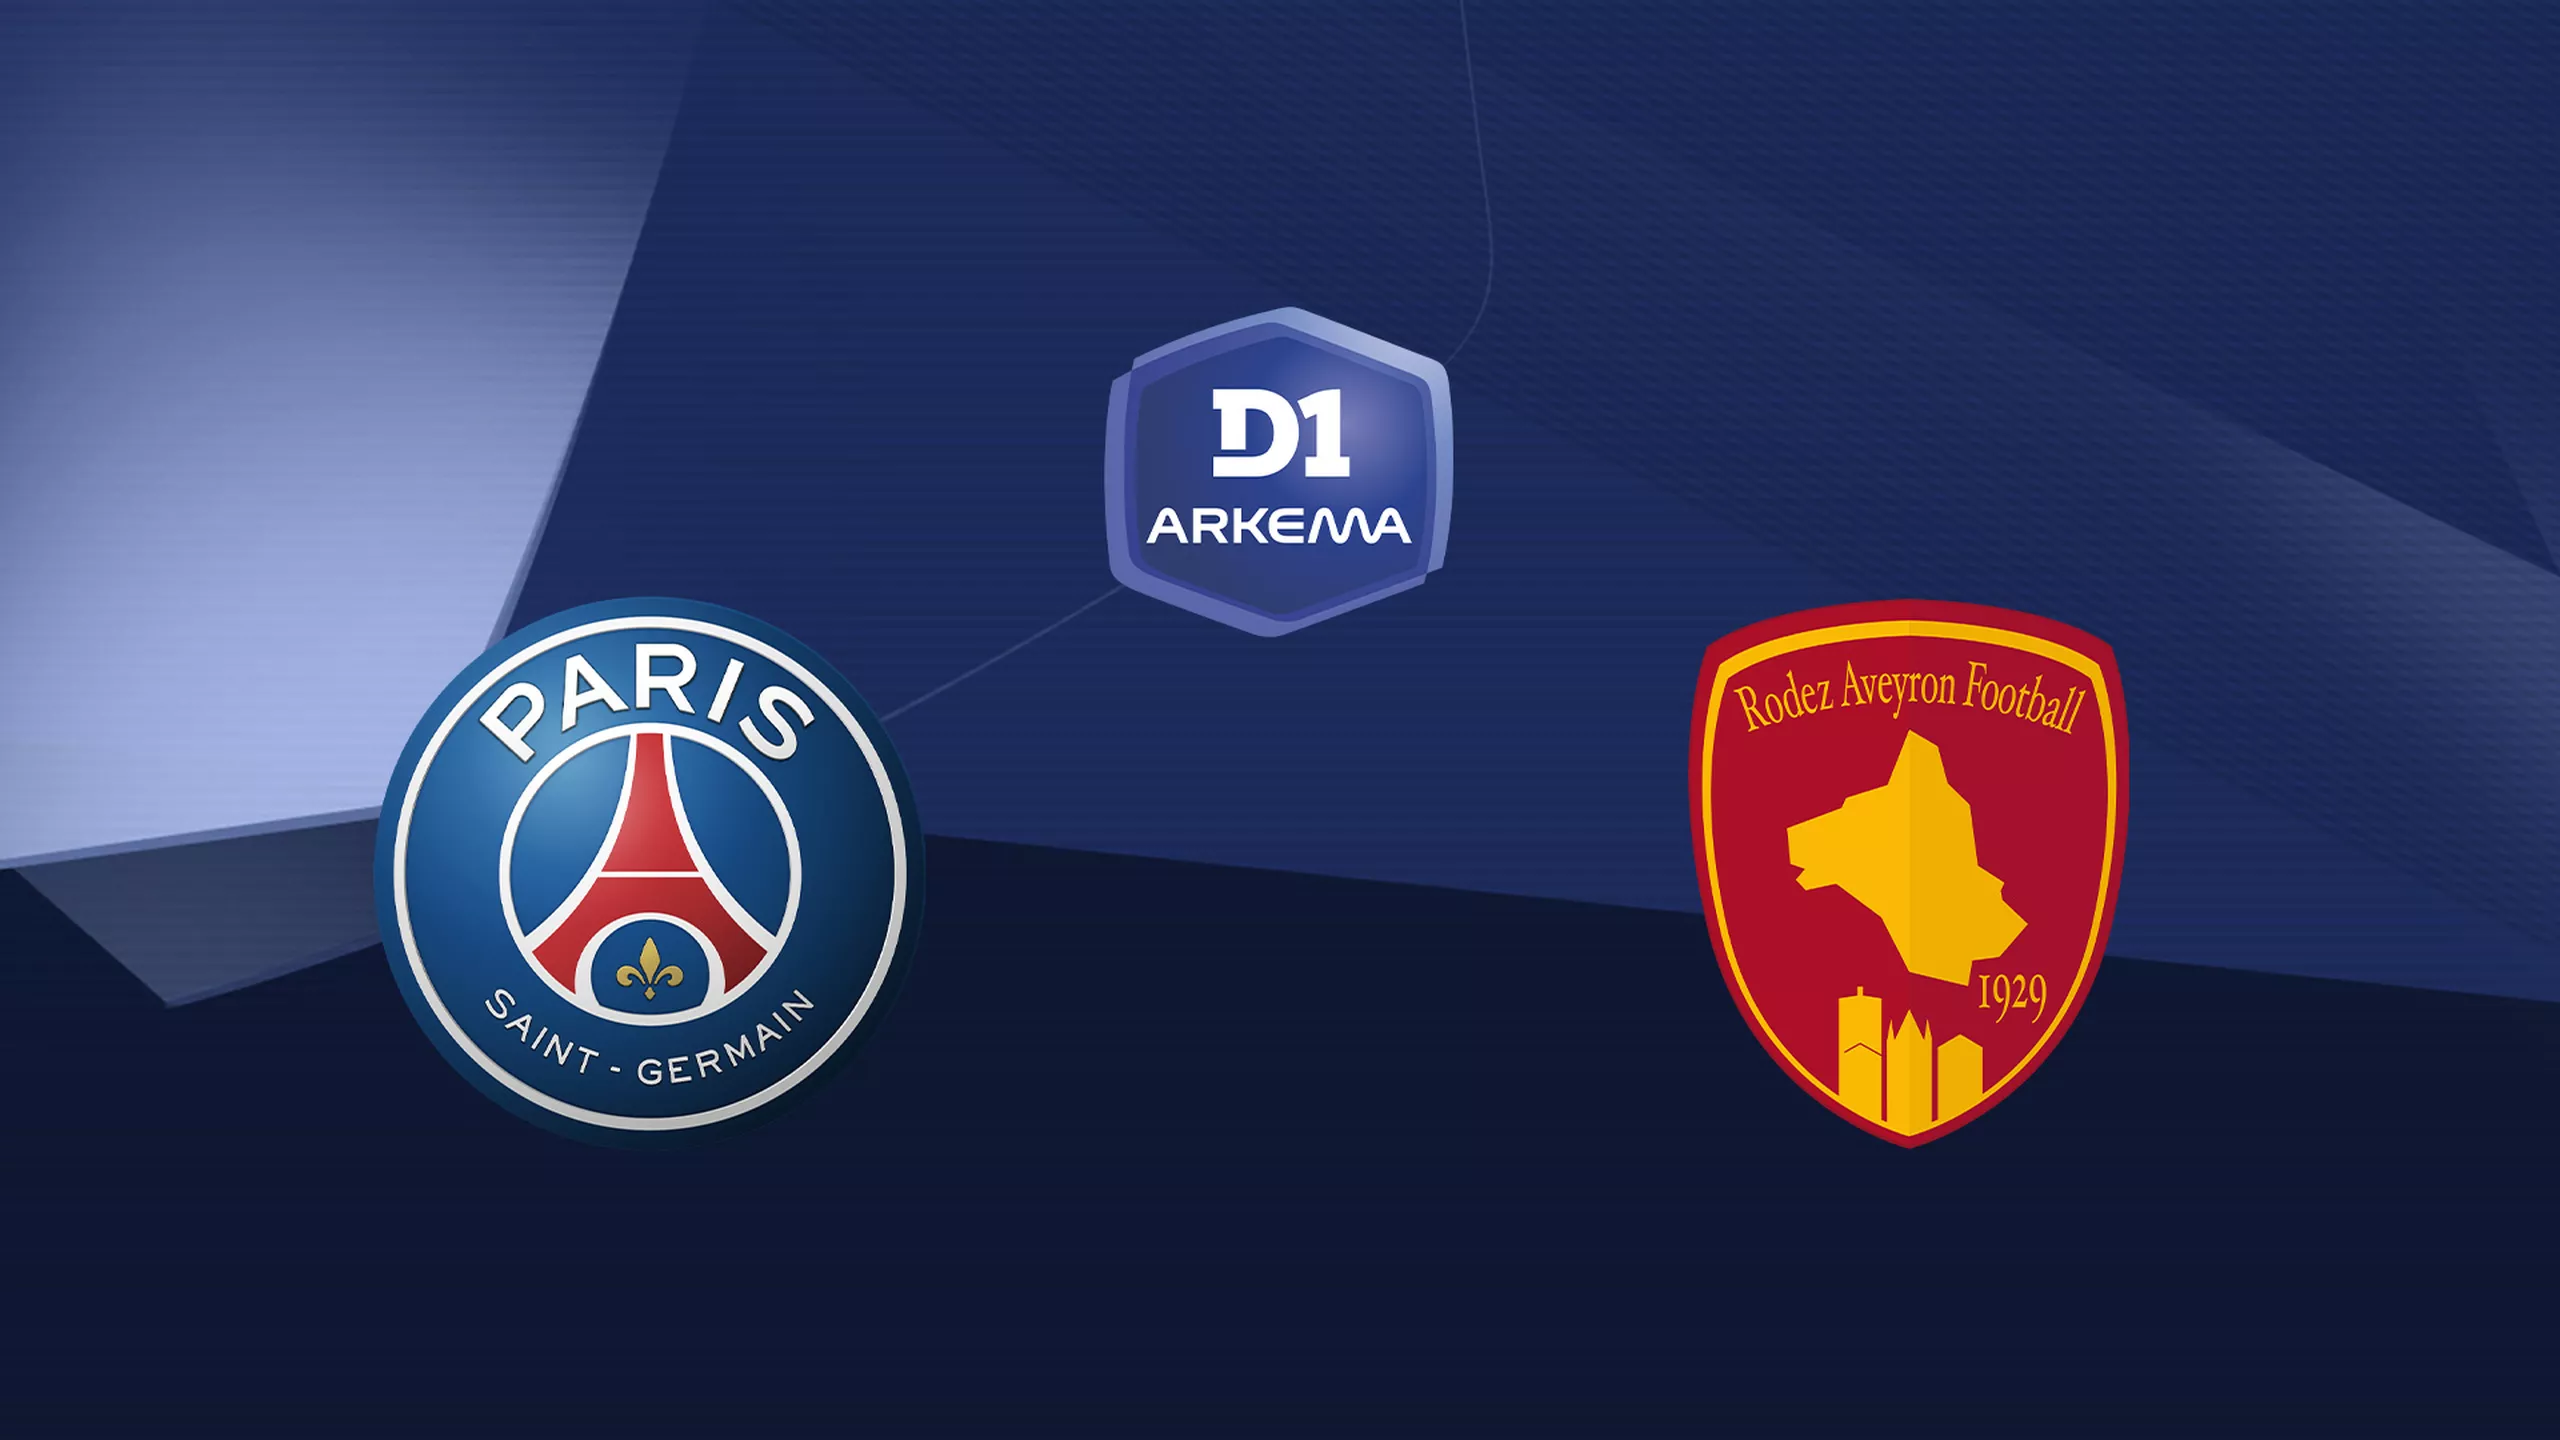 Paris SG / Rodez (TV/Streaming) Sur quelle chaîne et à quelle heure voir le match de D1 Arkéma ?